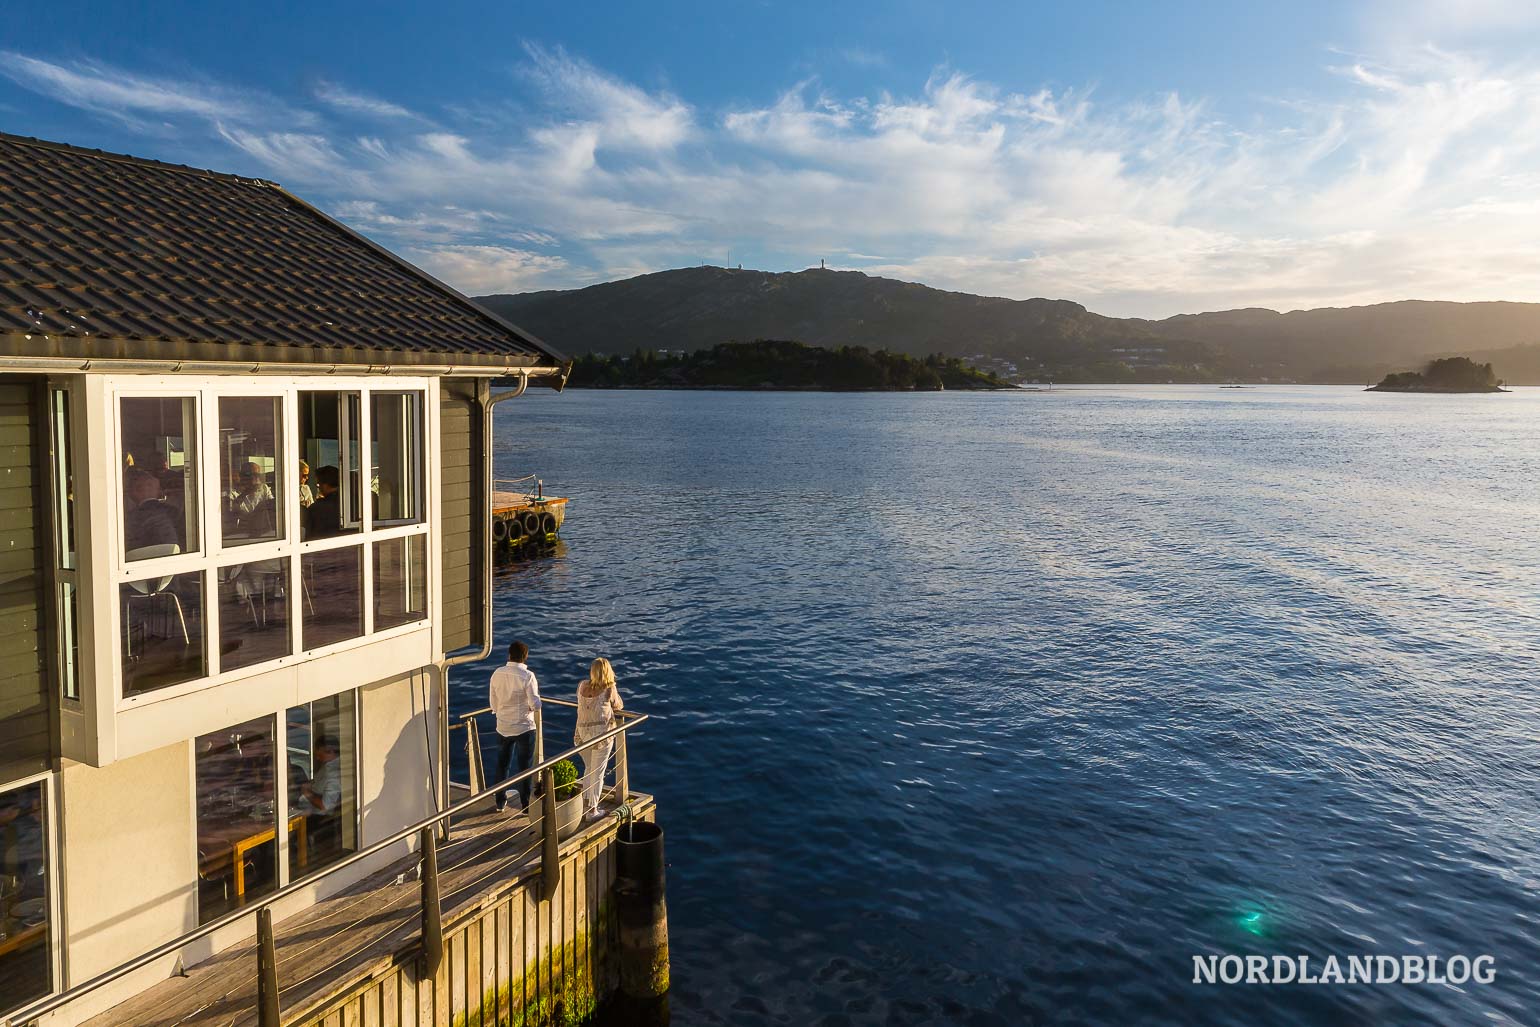 Eine Oase der Ruhe und des Friedens am Fjord bei Bergen: Das Cornelius auf einer eigenen Insel